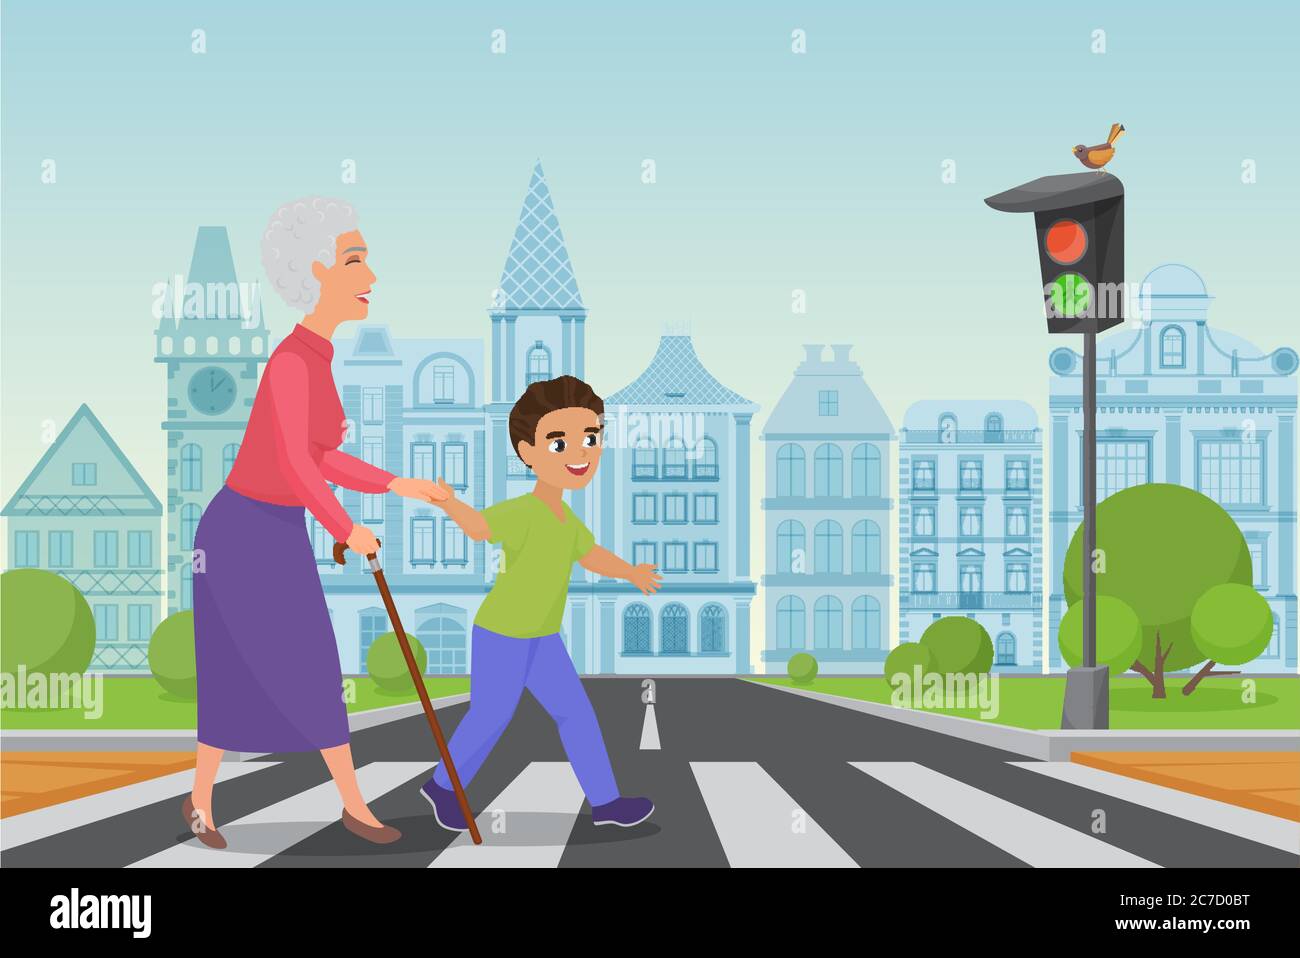 Il ragazzo piccolo educato aiuta a sorridere la vecchia donna a passare la strada a un passaggio pedonale mentre la luce verde splende. Illustrazione vettoriale cartoon Illustrazione Vettoriale